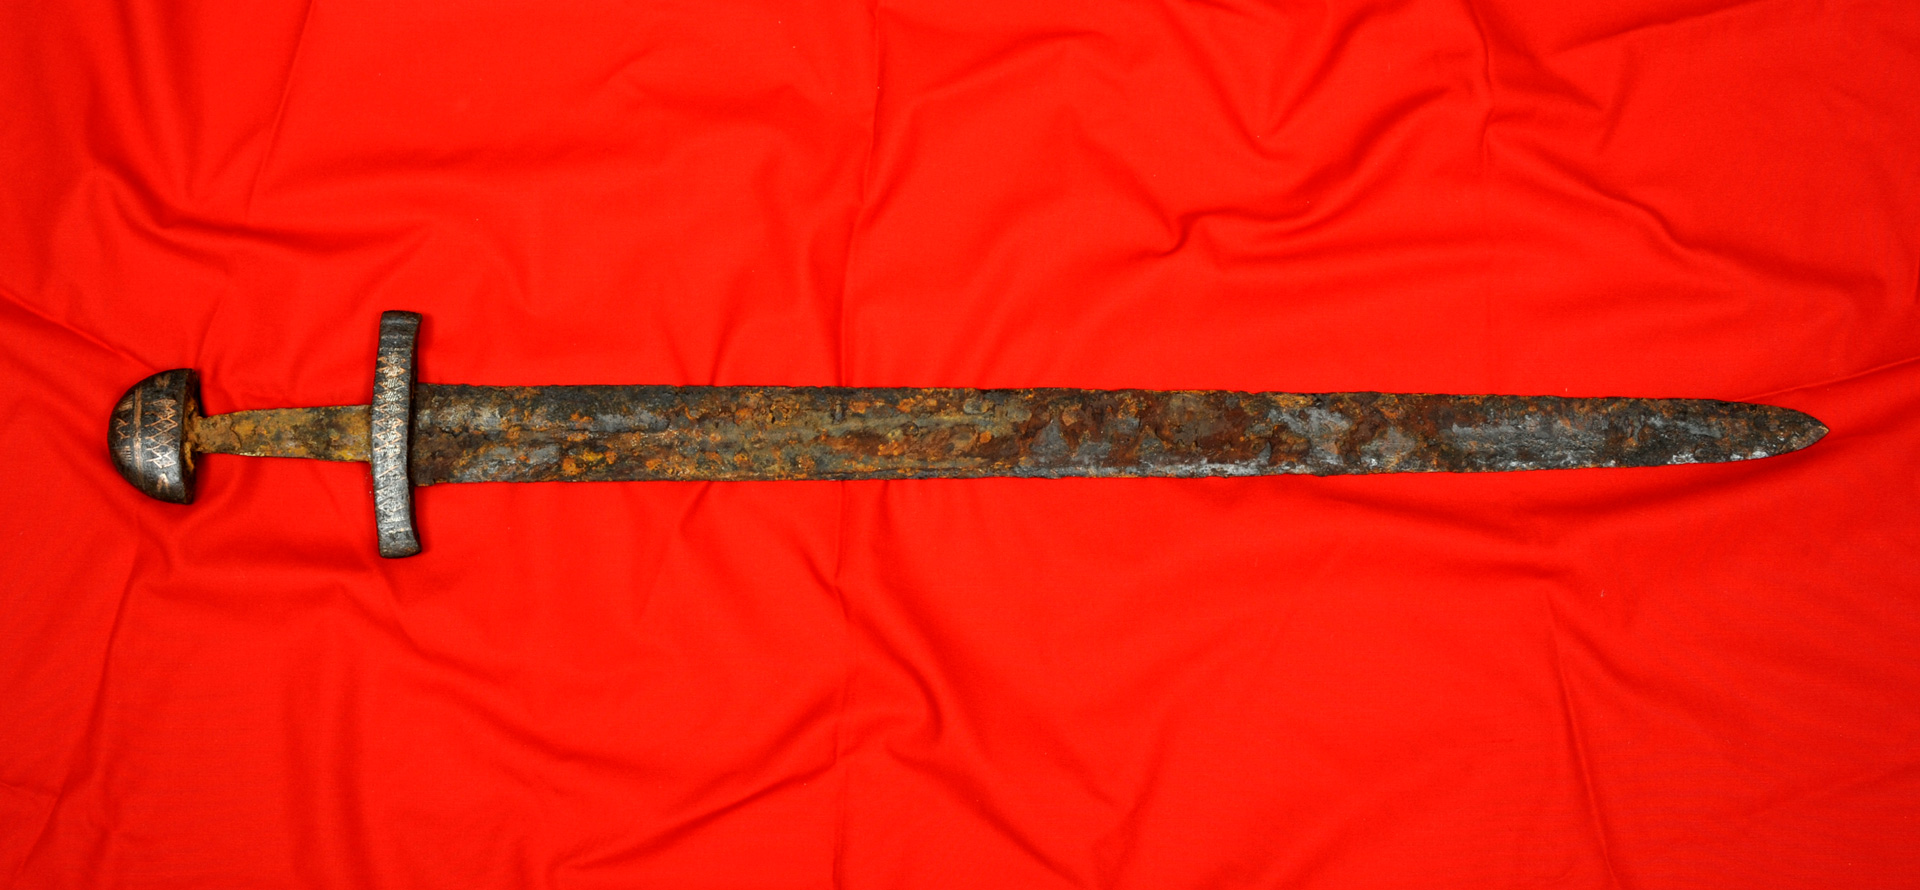 A large metal sword.